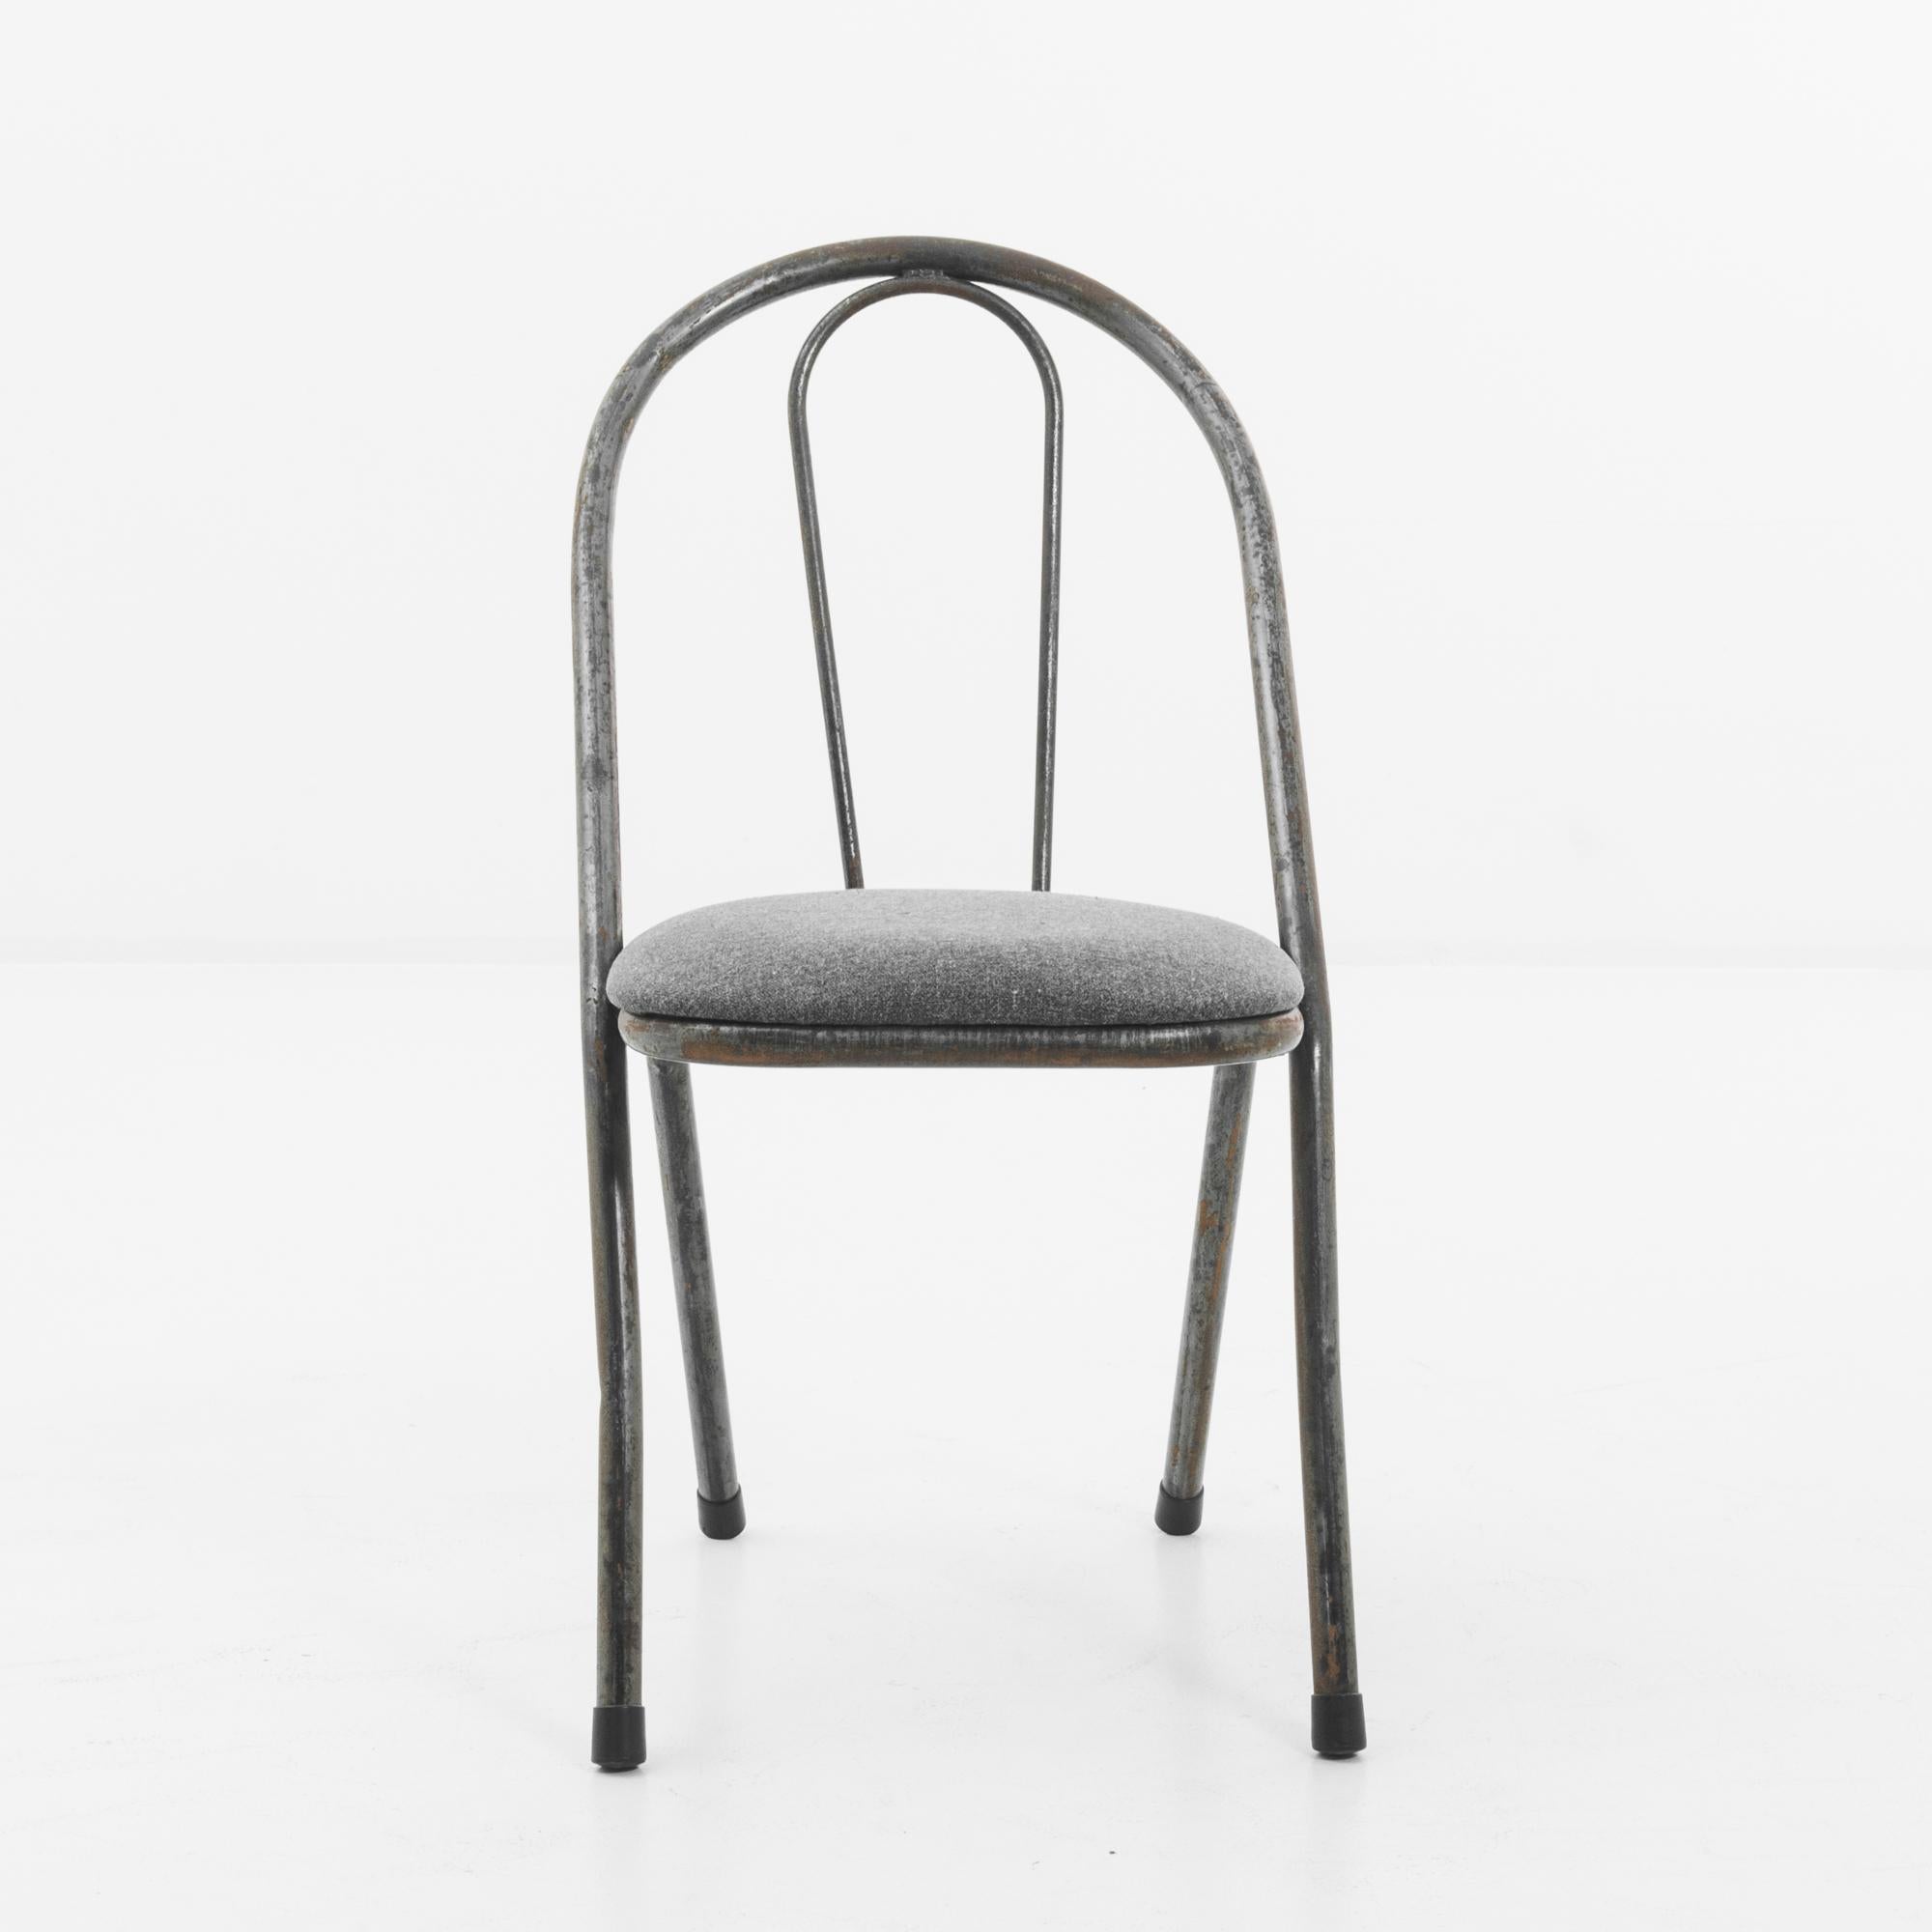 Ein Metallstuhl aus dem Vereinigten Königreich, hergestellt um 1950. Ein Sessel in Windsor-Manier: zwei Stiele aus gebogenem Metall mit gummierten Füßen, die sich um ein weiches Kissen in hellem Anthrazit winden. Dieser abtrünnige Sitz erinnert an